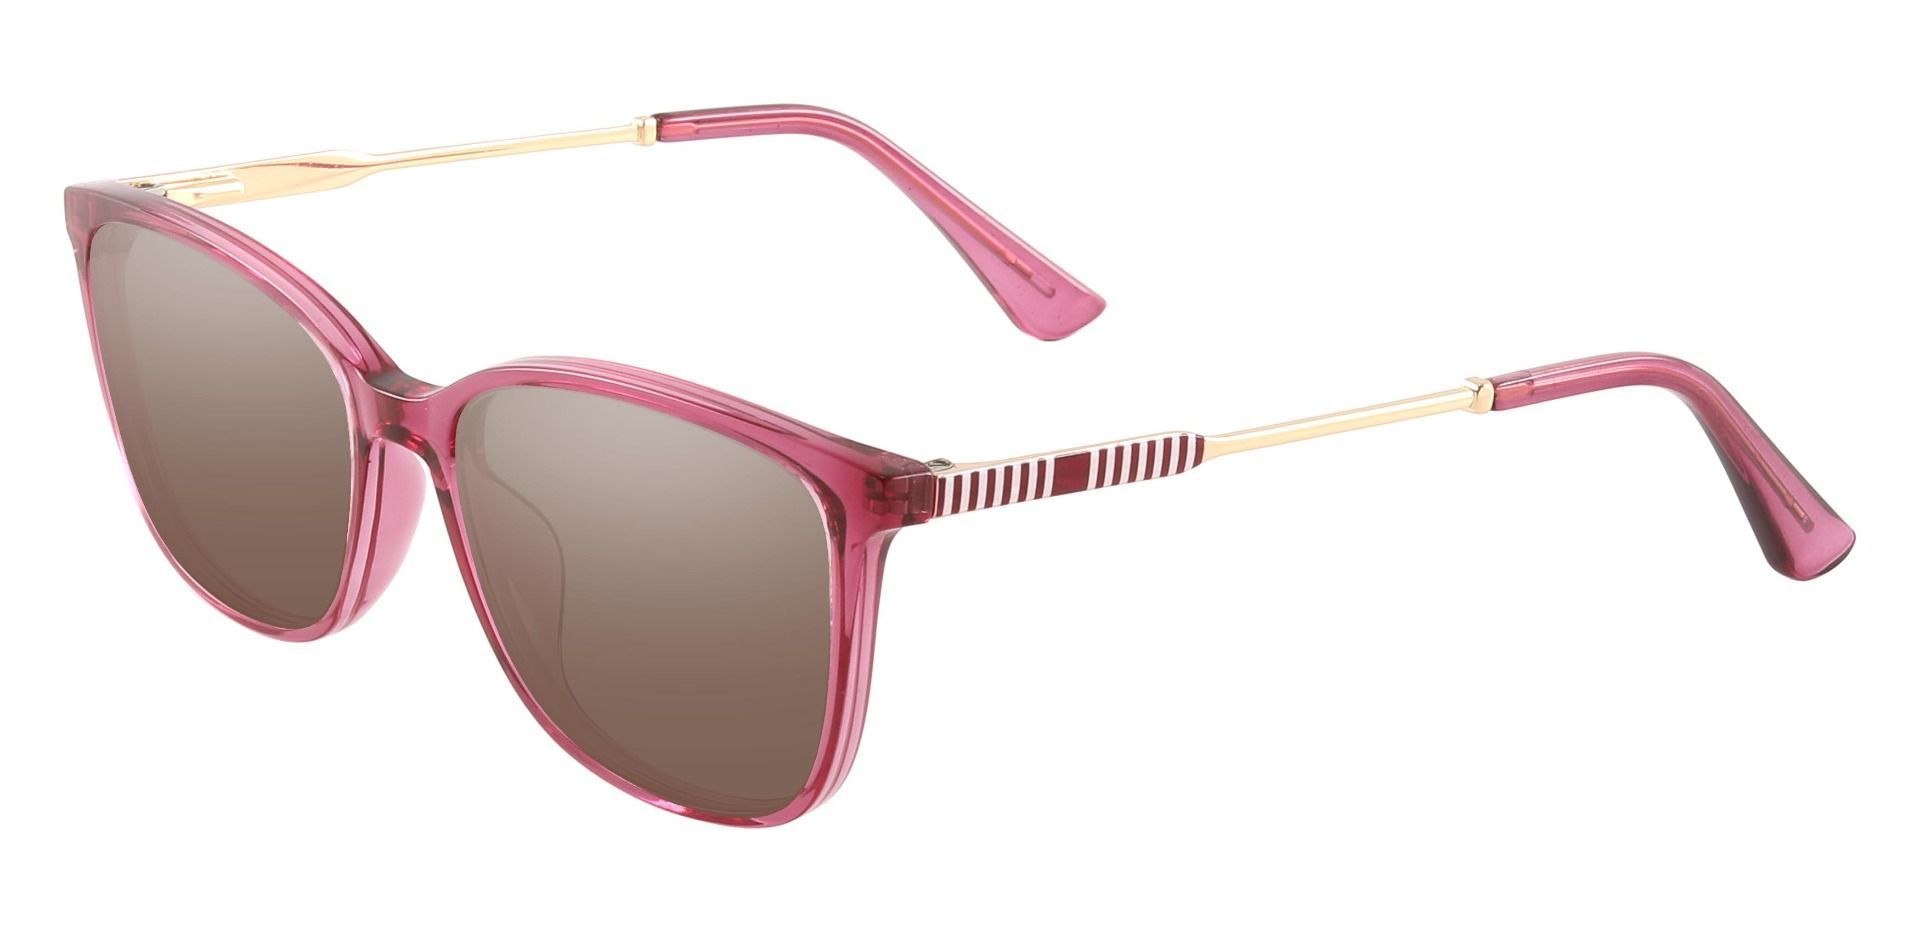 Miami Rectangle Progressive Sunglasses - Purple Frame With Brown Lenses